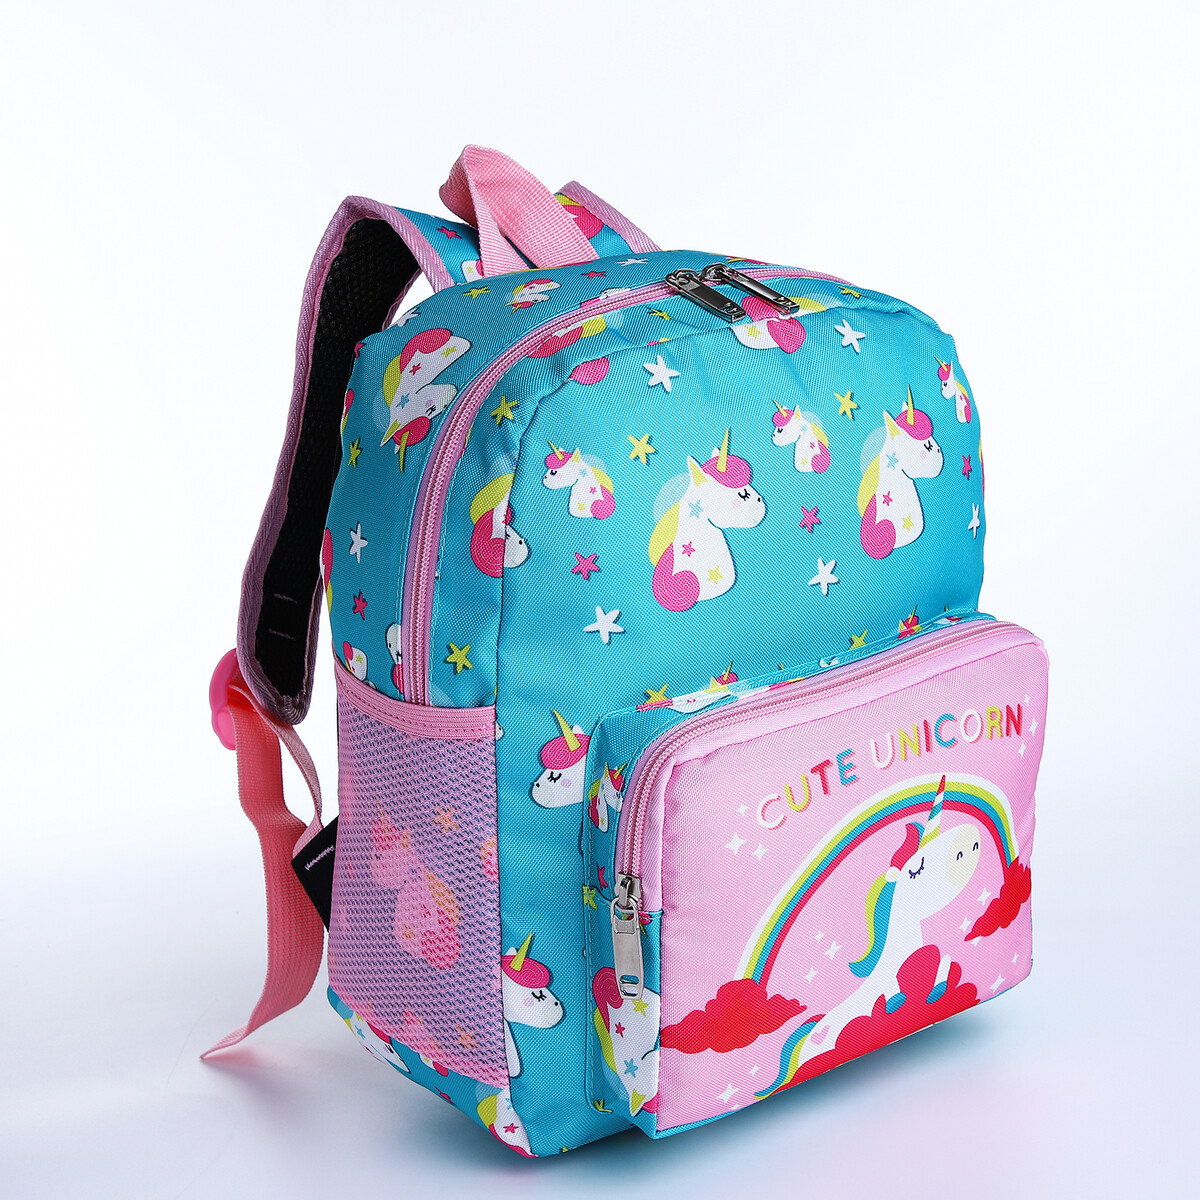 Рюкзак детский на молнии, 3 наружных кармана, цвет бирюзовый/розовый часы наручные barbie электронные бирюзовый розовый bbrj6 r4